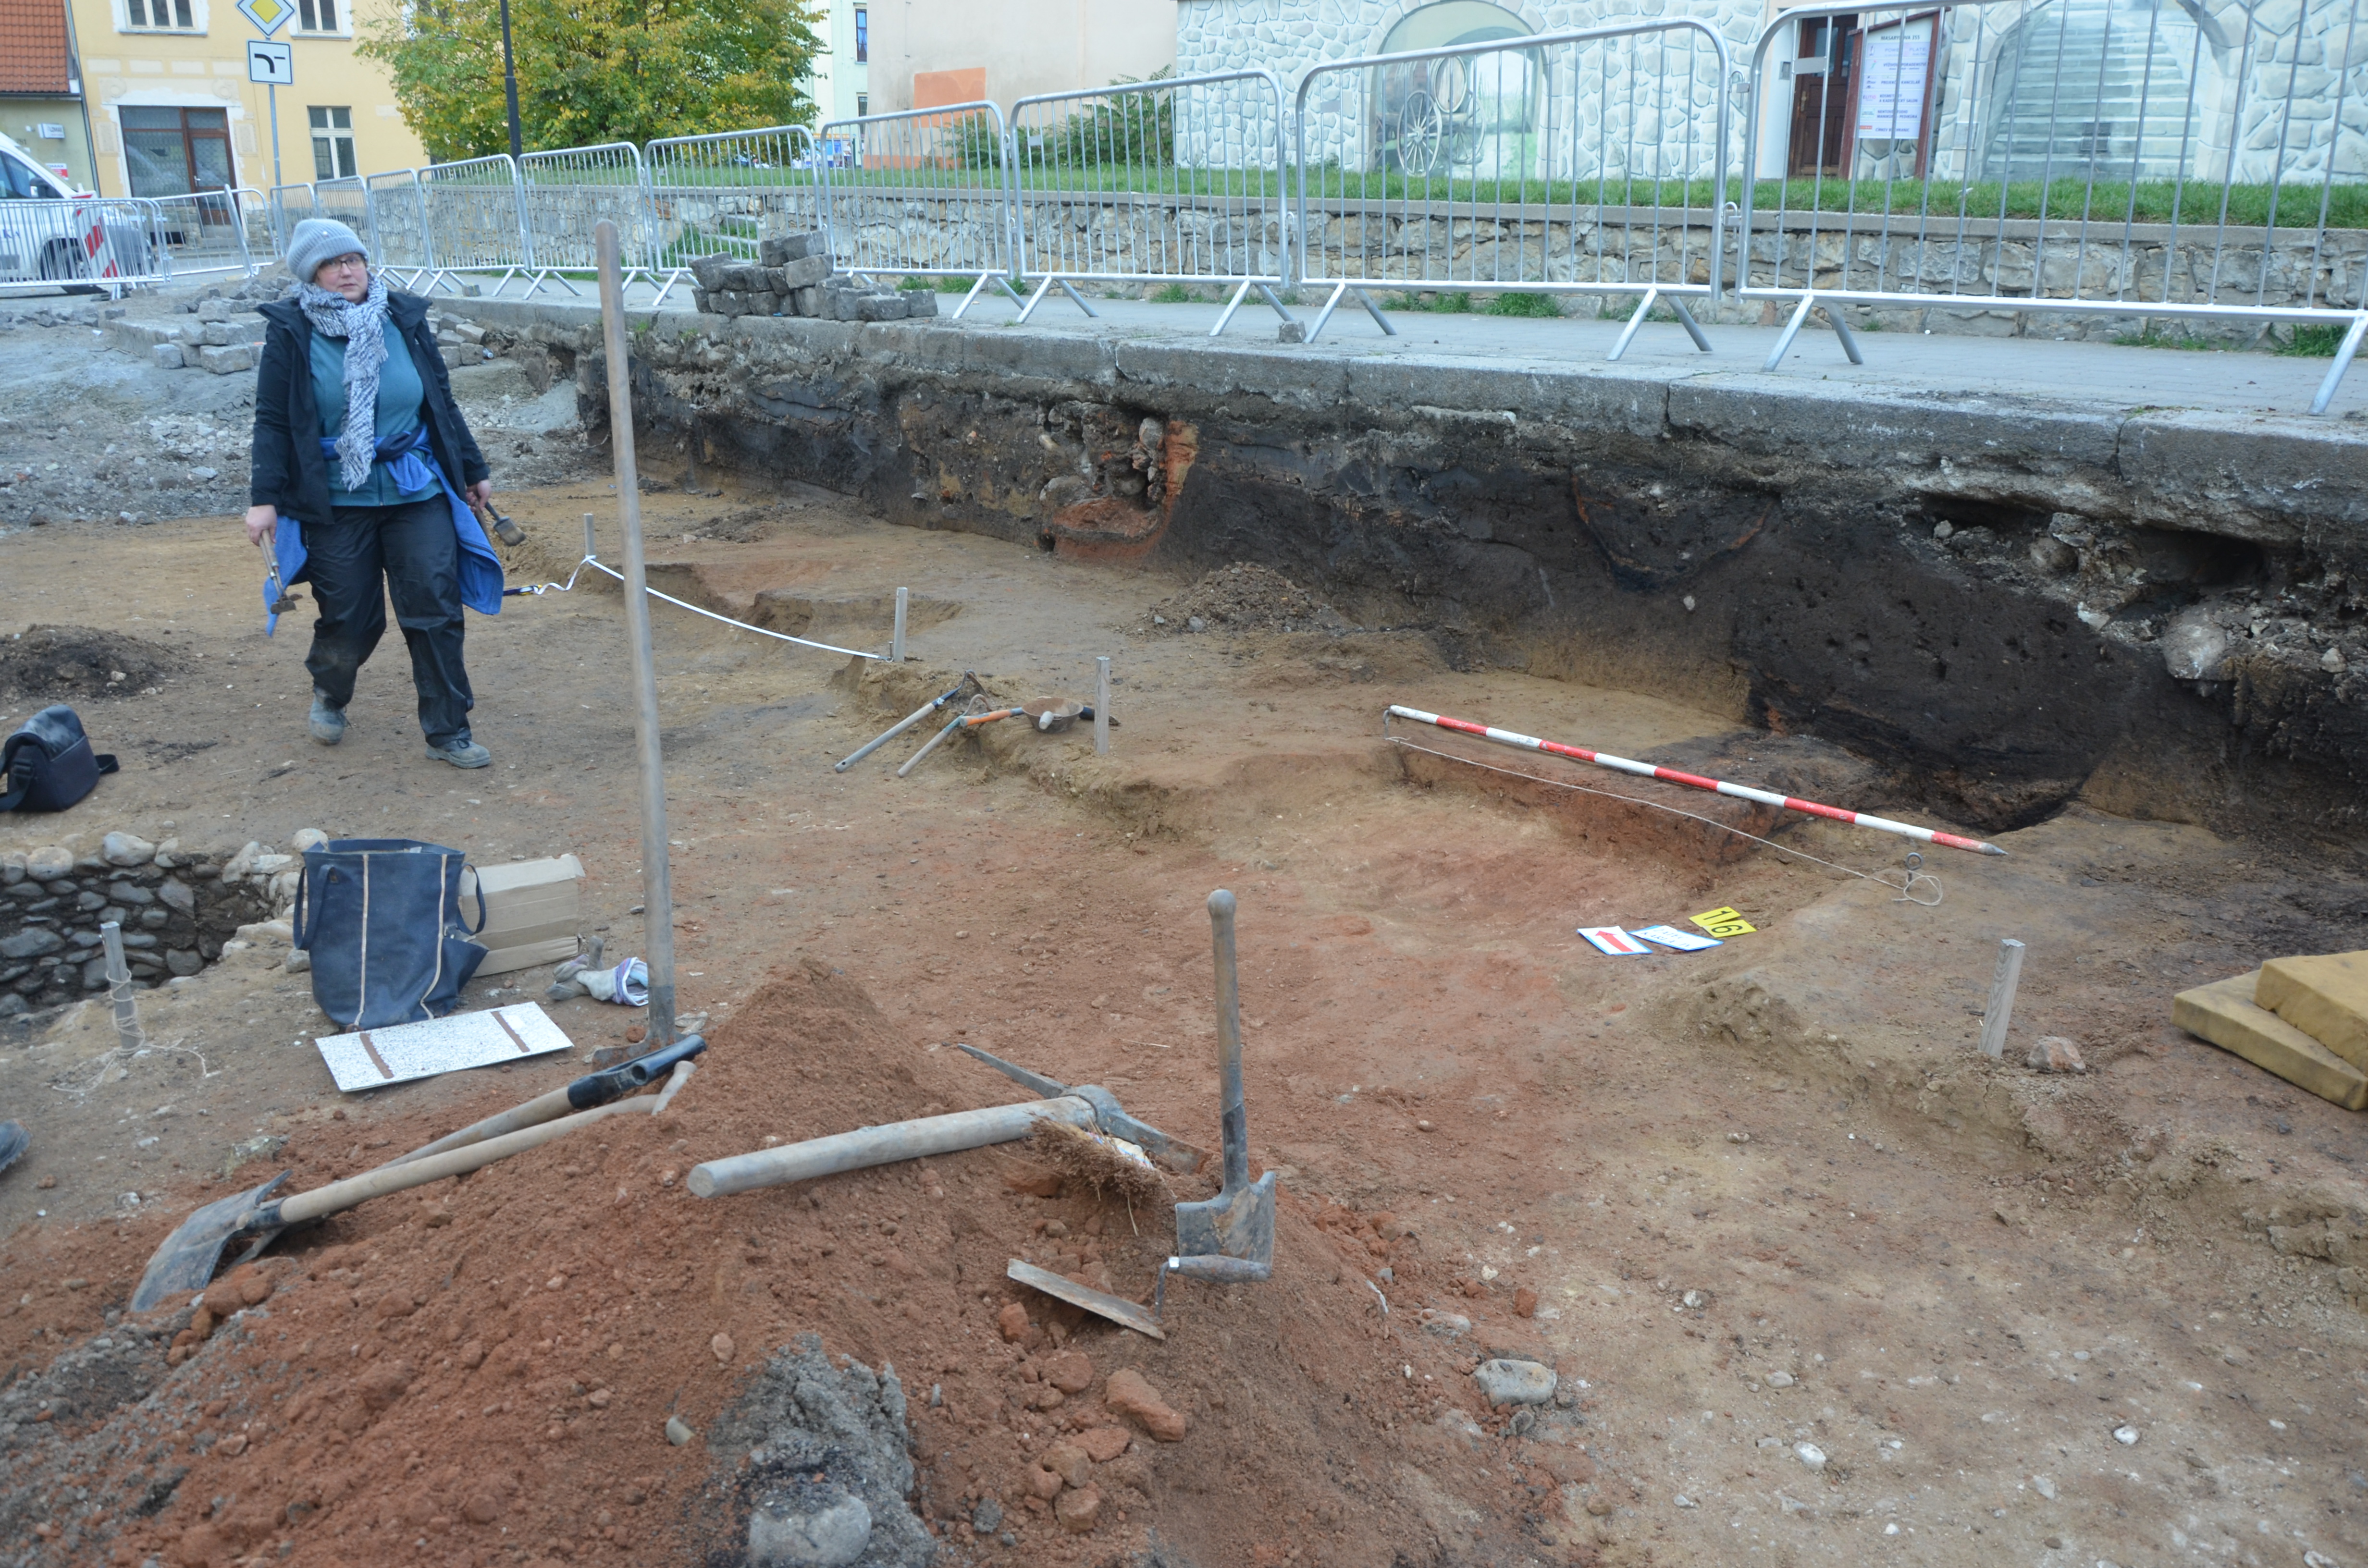 OBR. 2: Pracovnice muzea Bc. L. Matoušová na archeologickém výzkumu v ul. Karla IV. Foto: P. Holodňák